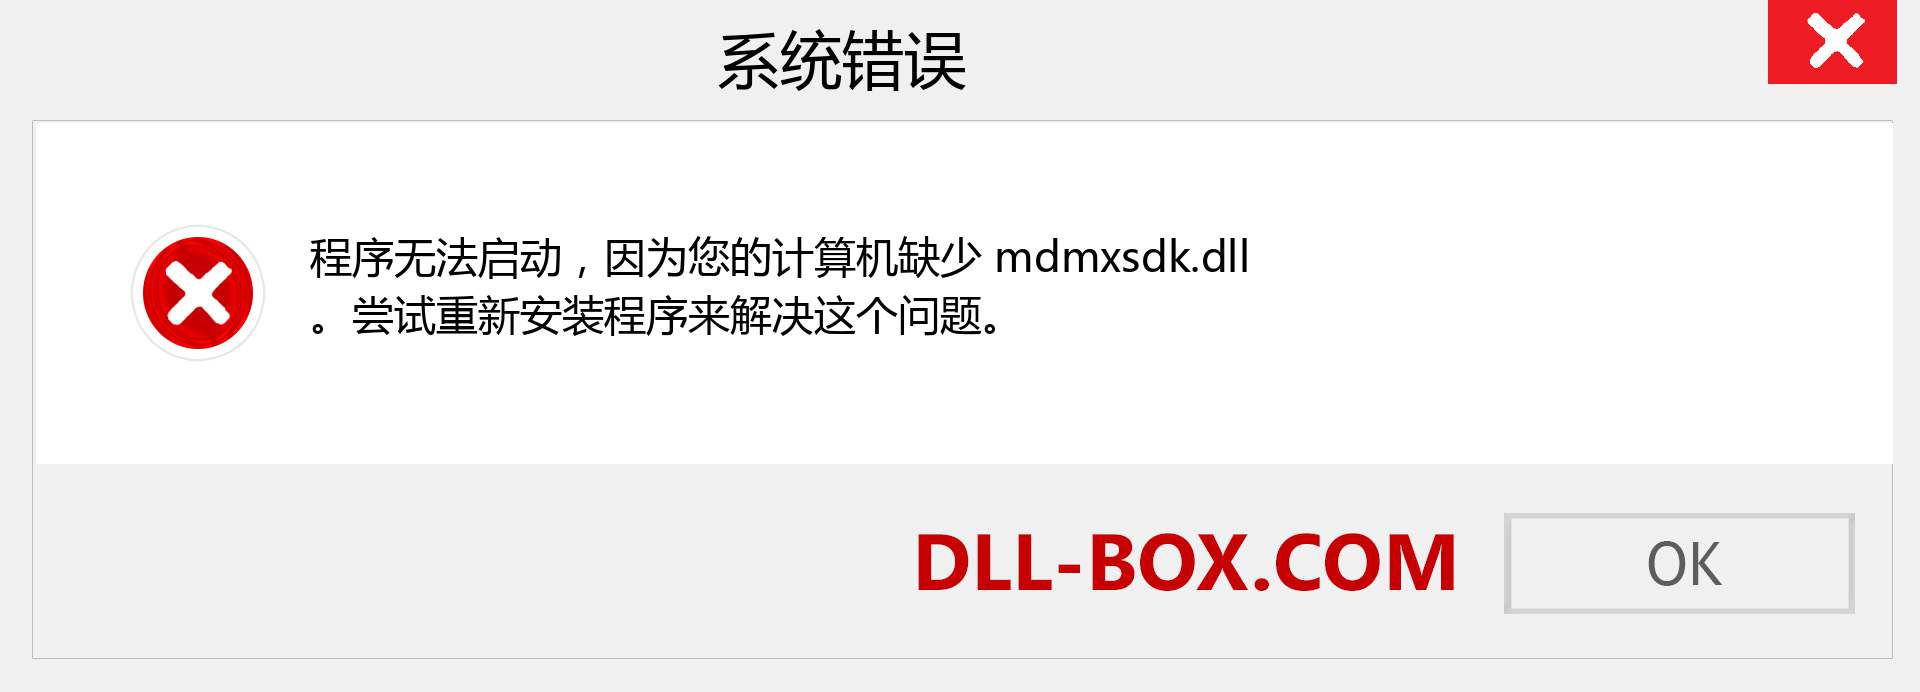 mdmxsdk.dll 文件丢失？。 适用于 Windows 7、8、10 的下载 - 修复 Windows、照片、图像上的 mdmxsdk dll 丢失错误